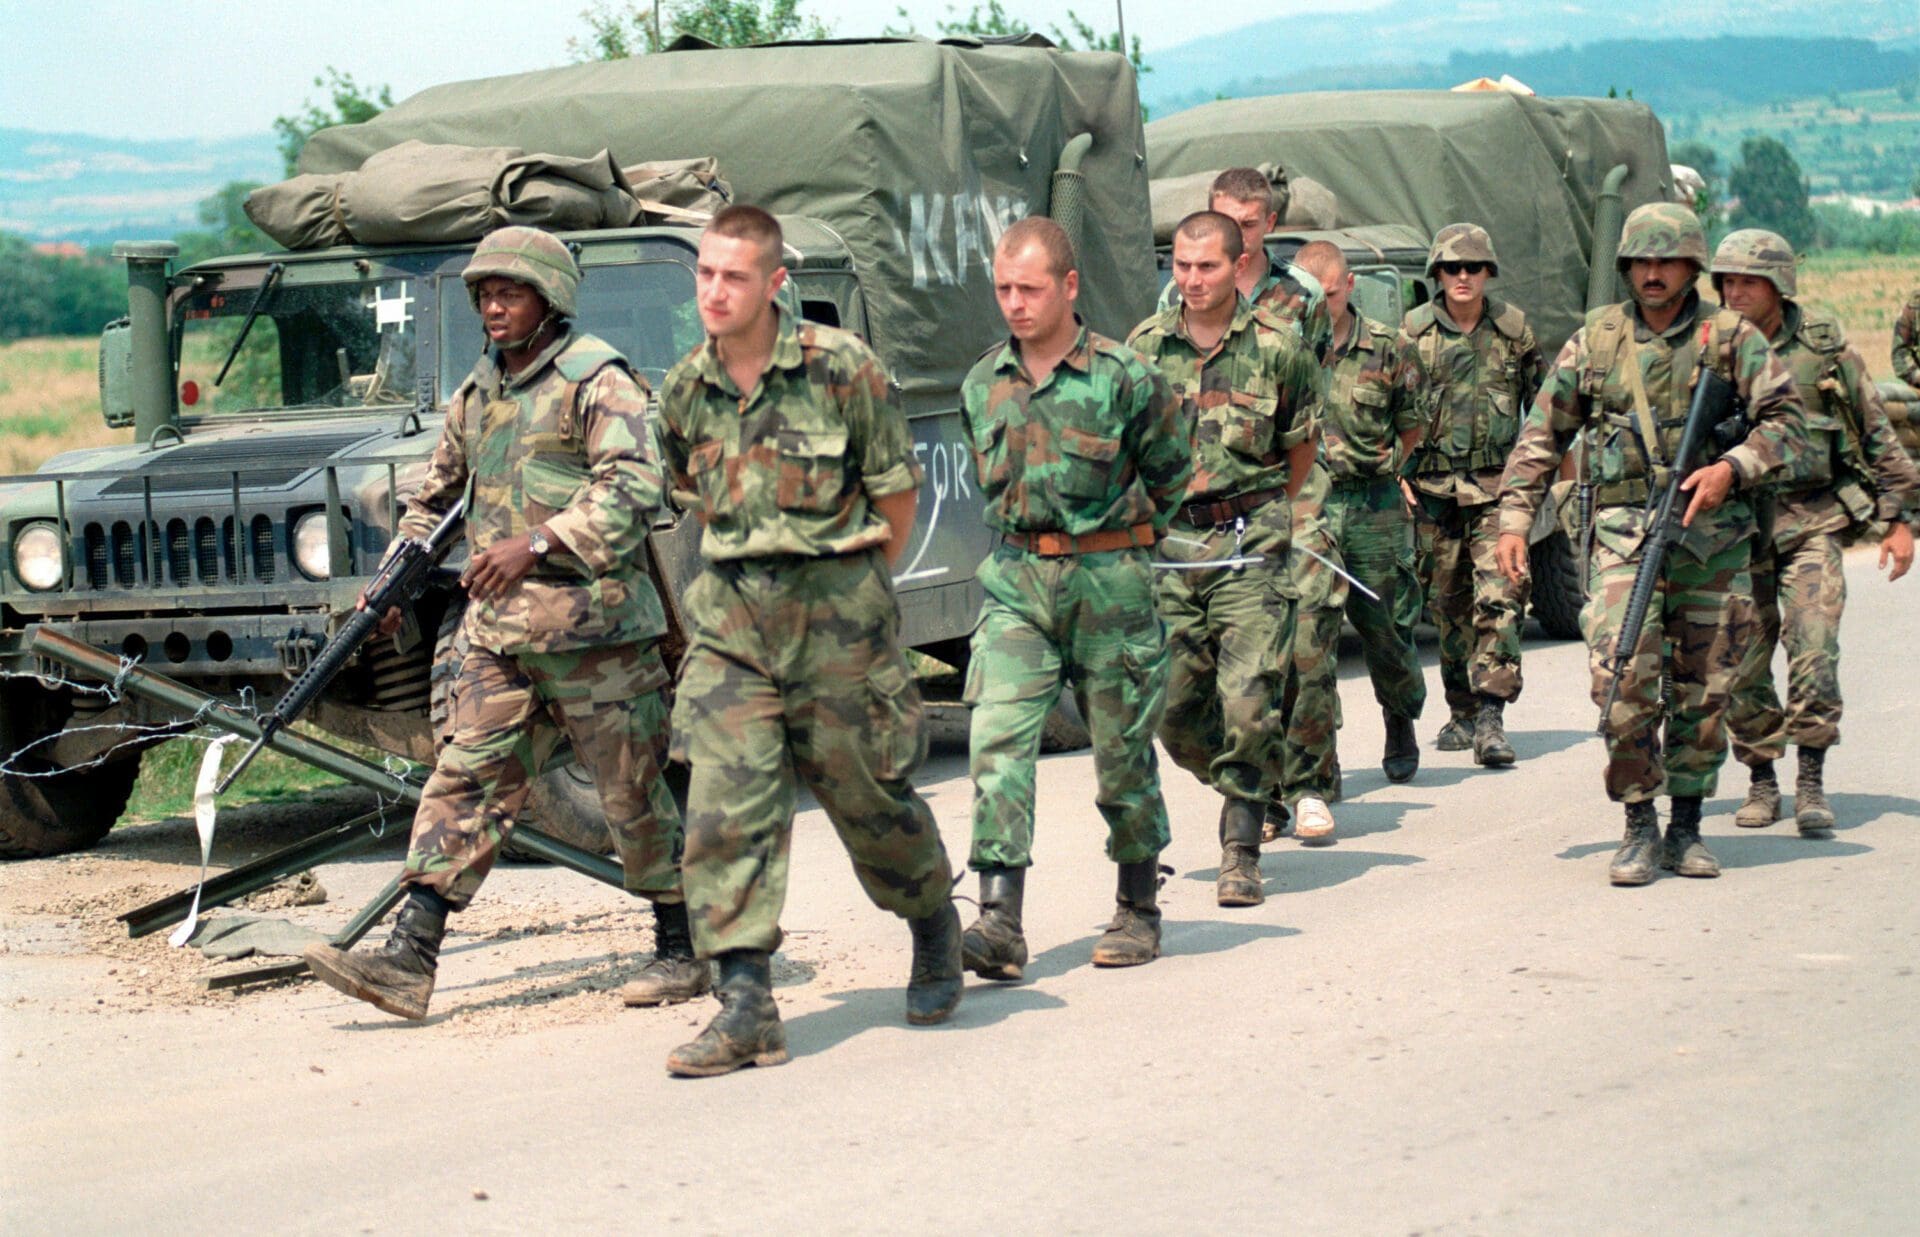 US Marines escorting Yugoslav POWs in Kosovo over to Yugoslav authorities on 3 July 1999.